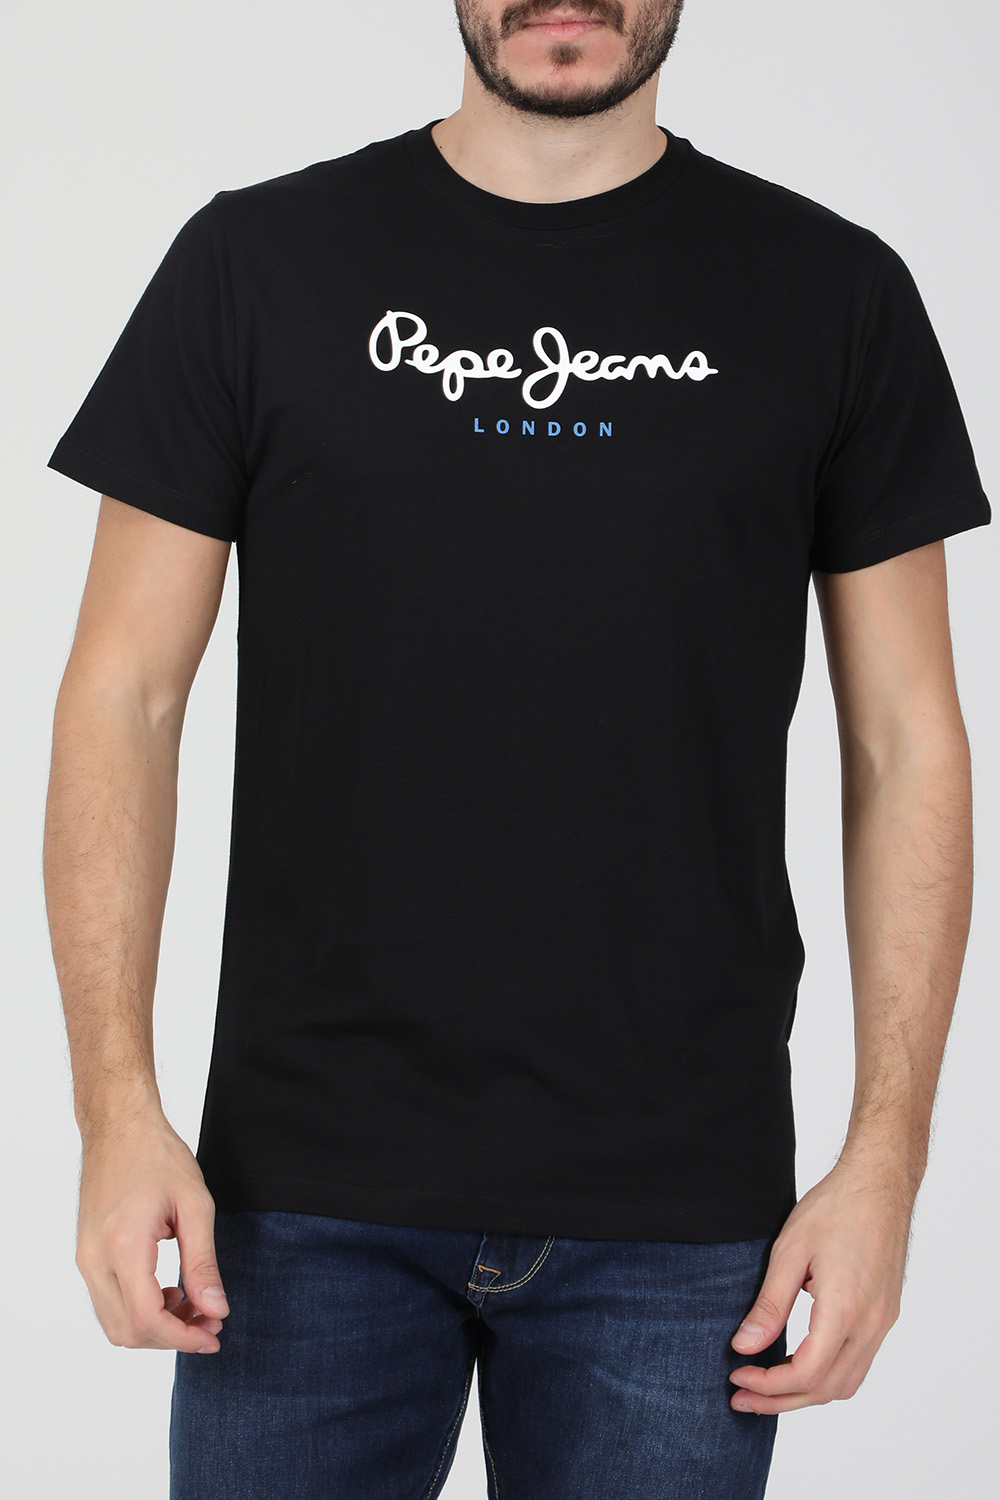 PEPE JEANS – Ανδρικη κοντομανικη μπλουζα PEPE JEANS NOS EGGO μαυρη